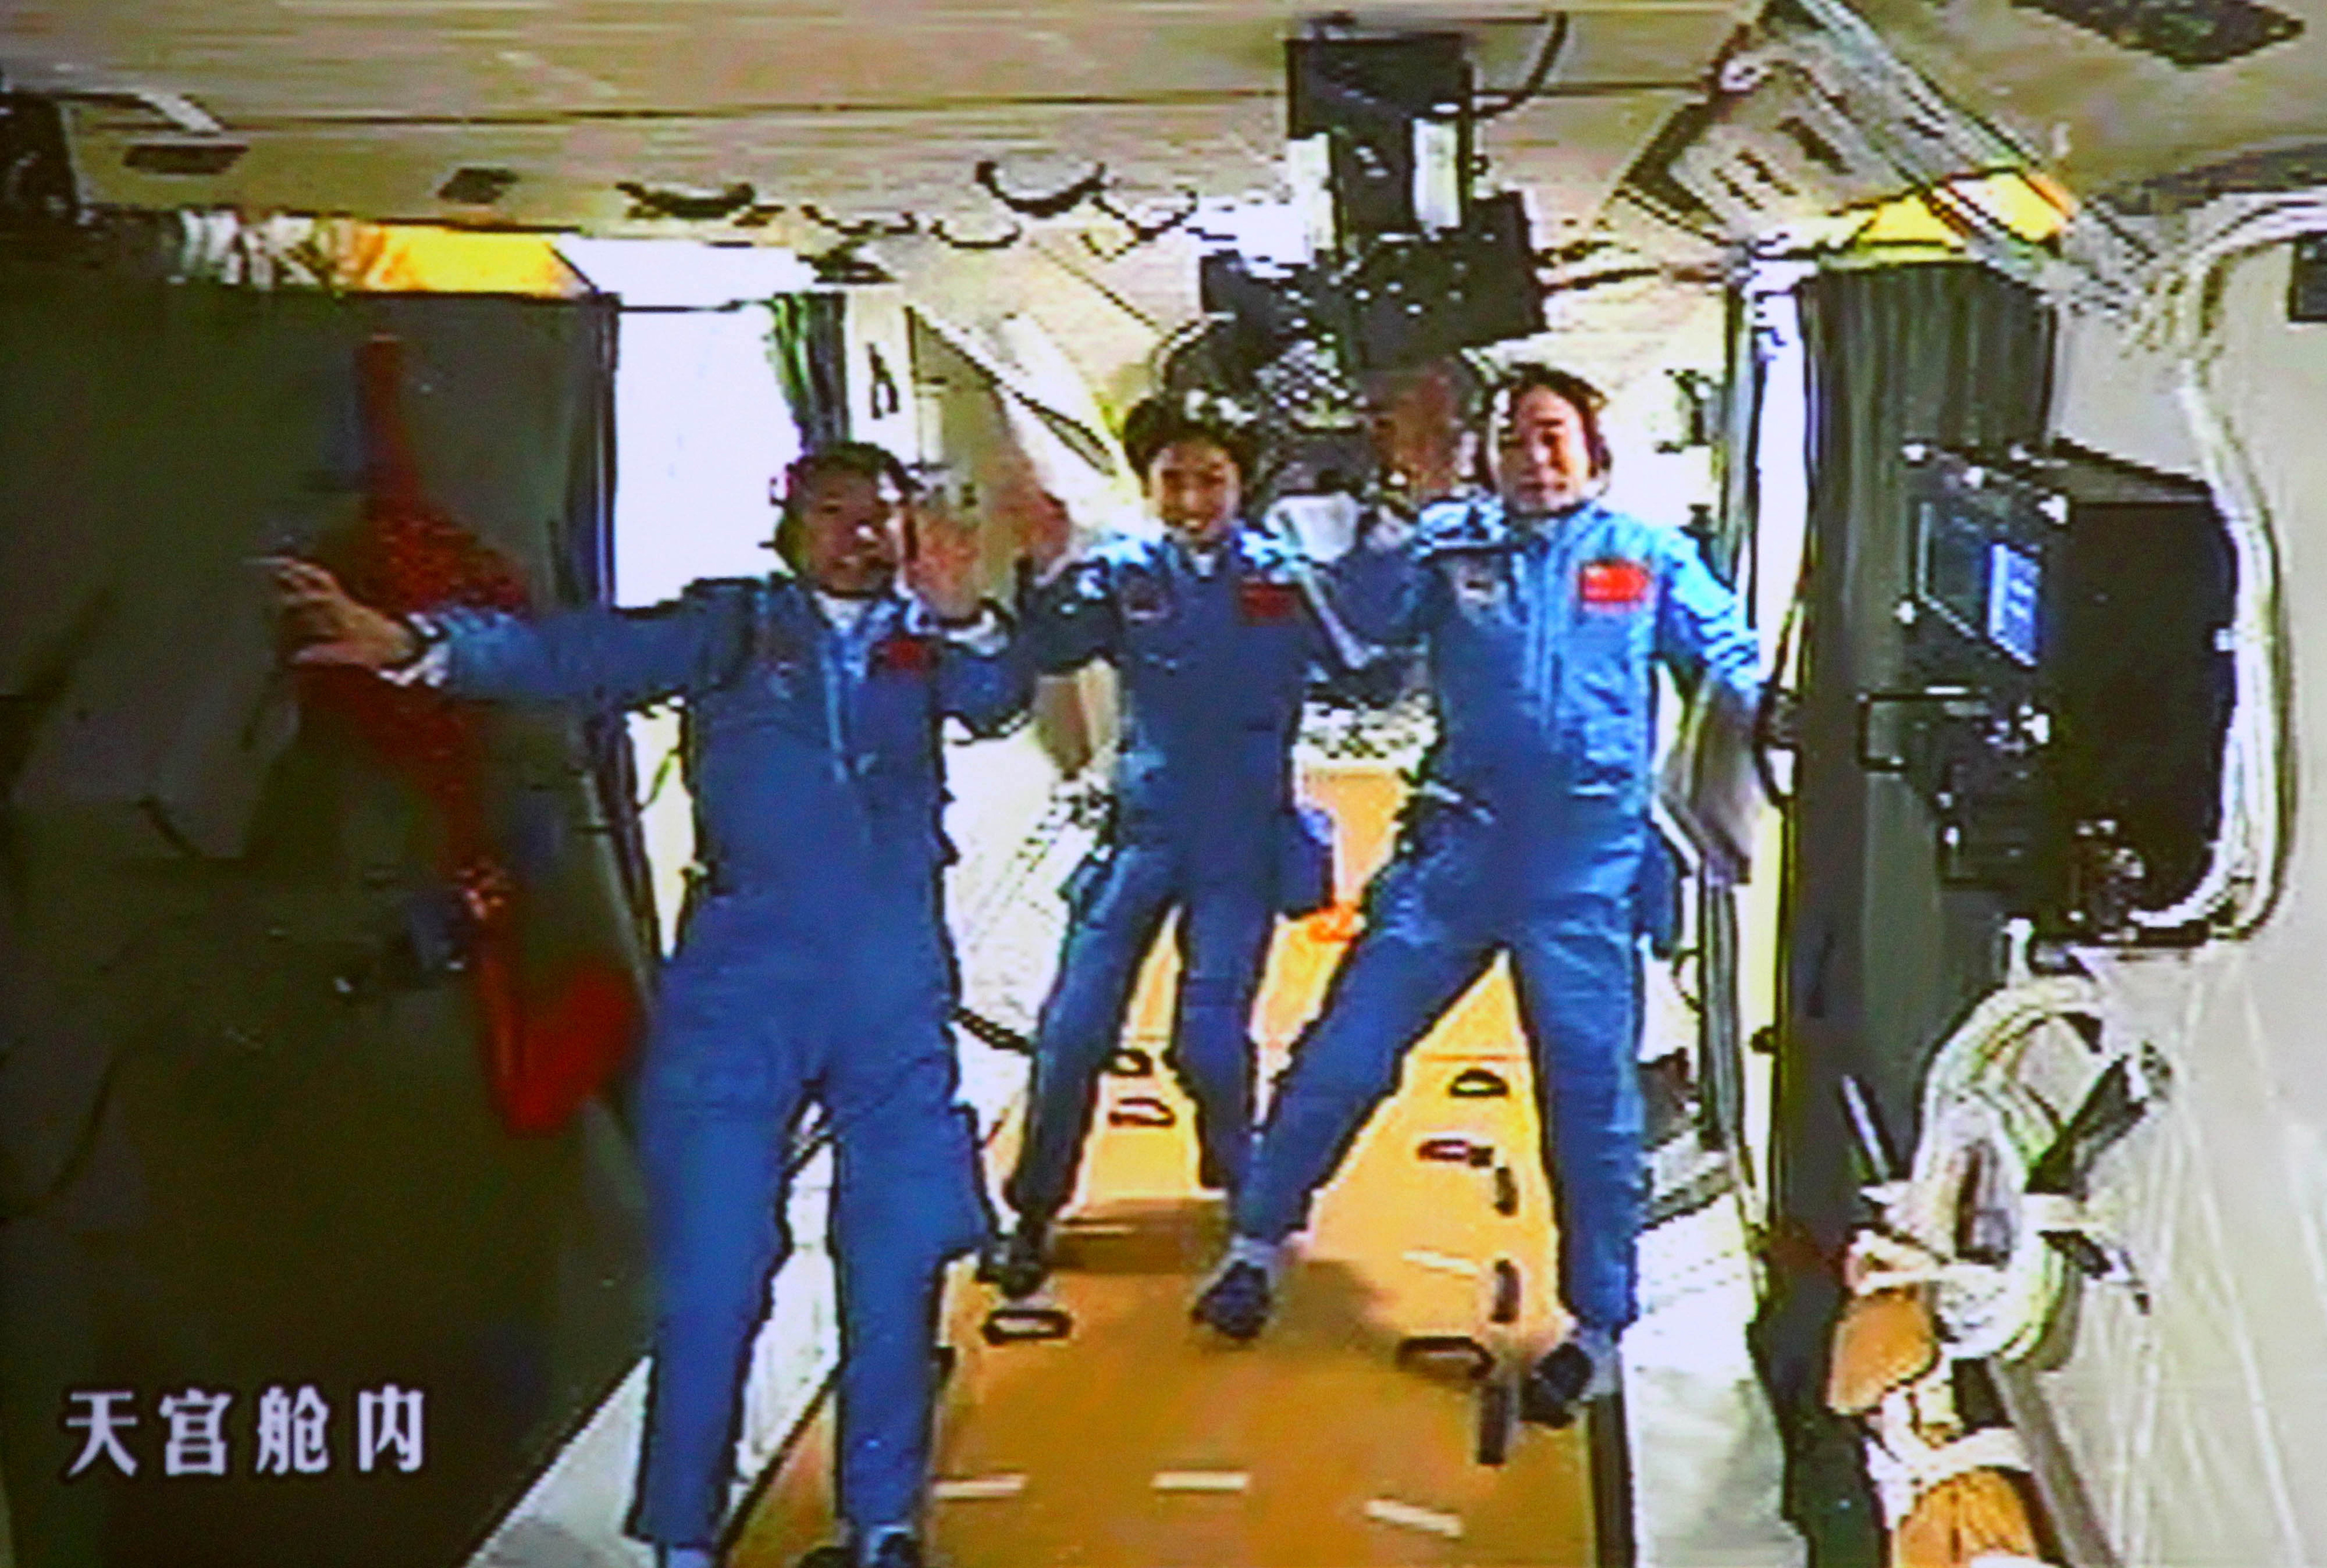 Chinese astronauts Liu Wang, Liu Yang and Jing Haipeng wave on board the Tiangong-1 space station